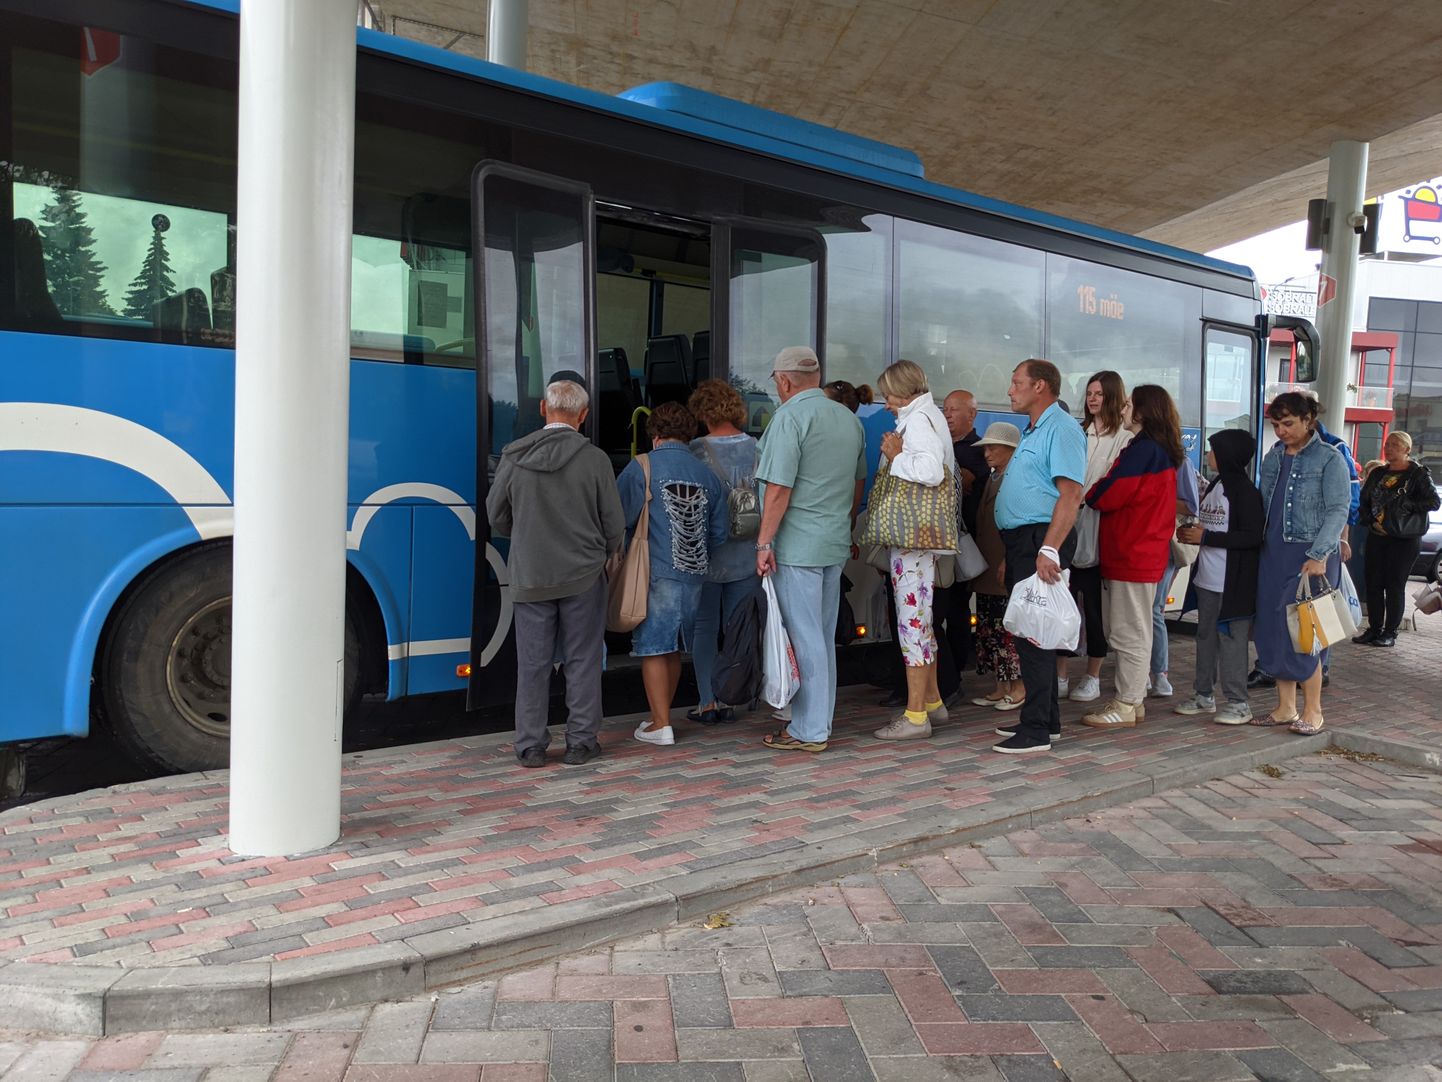 Esmaspäeva pärastlõunal läksid Jõhvi bussijaamas Sillamäe bussile puha ilma maskita inimesed.